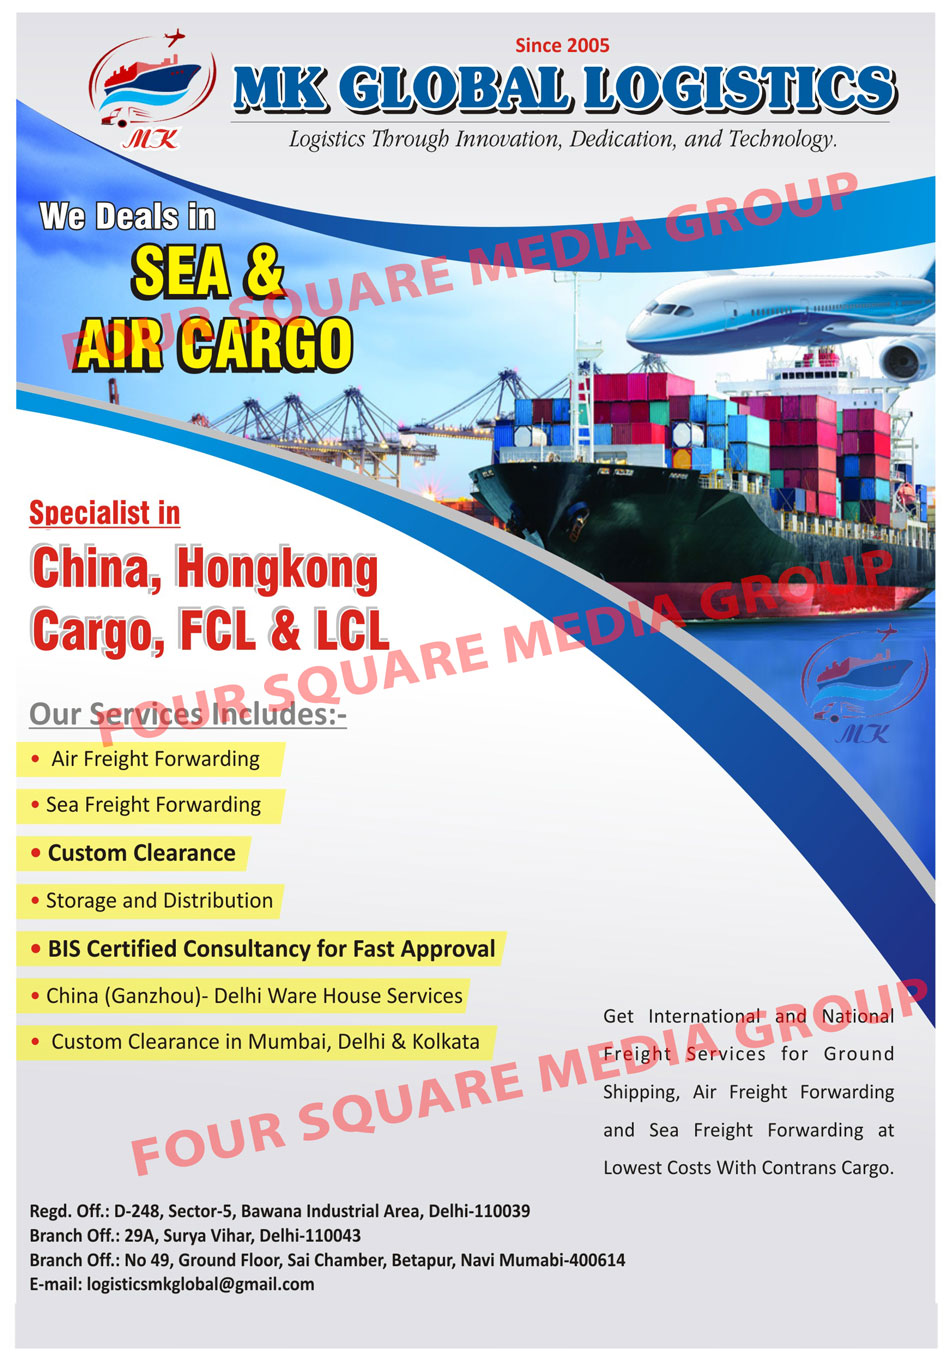 Sea Cargo Services, Air Cargo Services, Freight Services